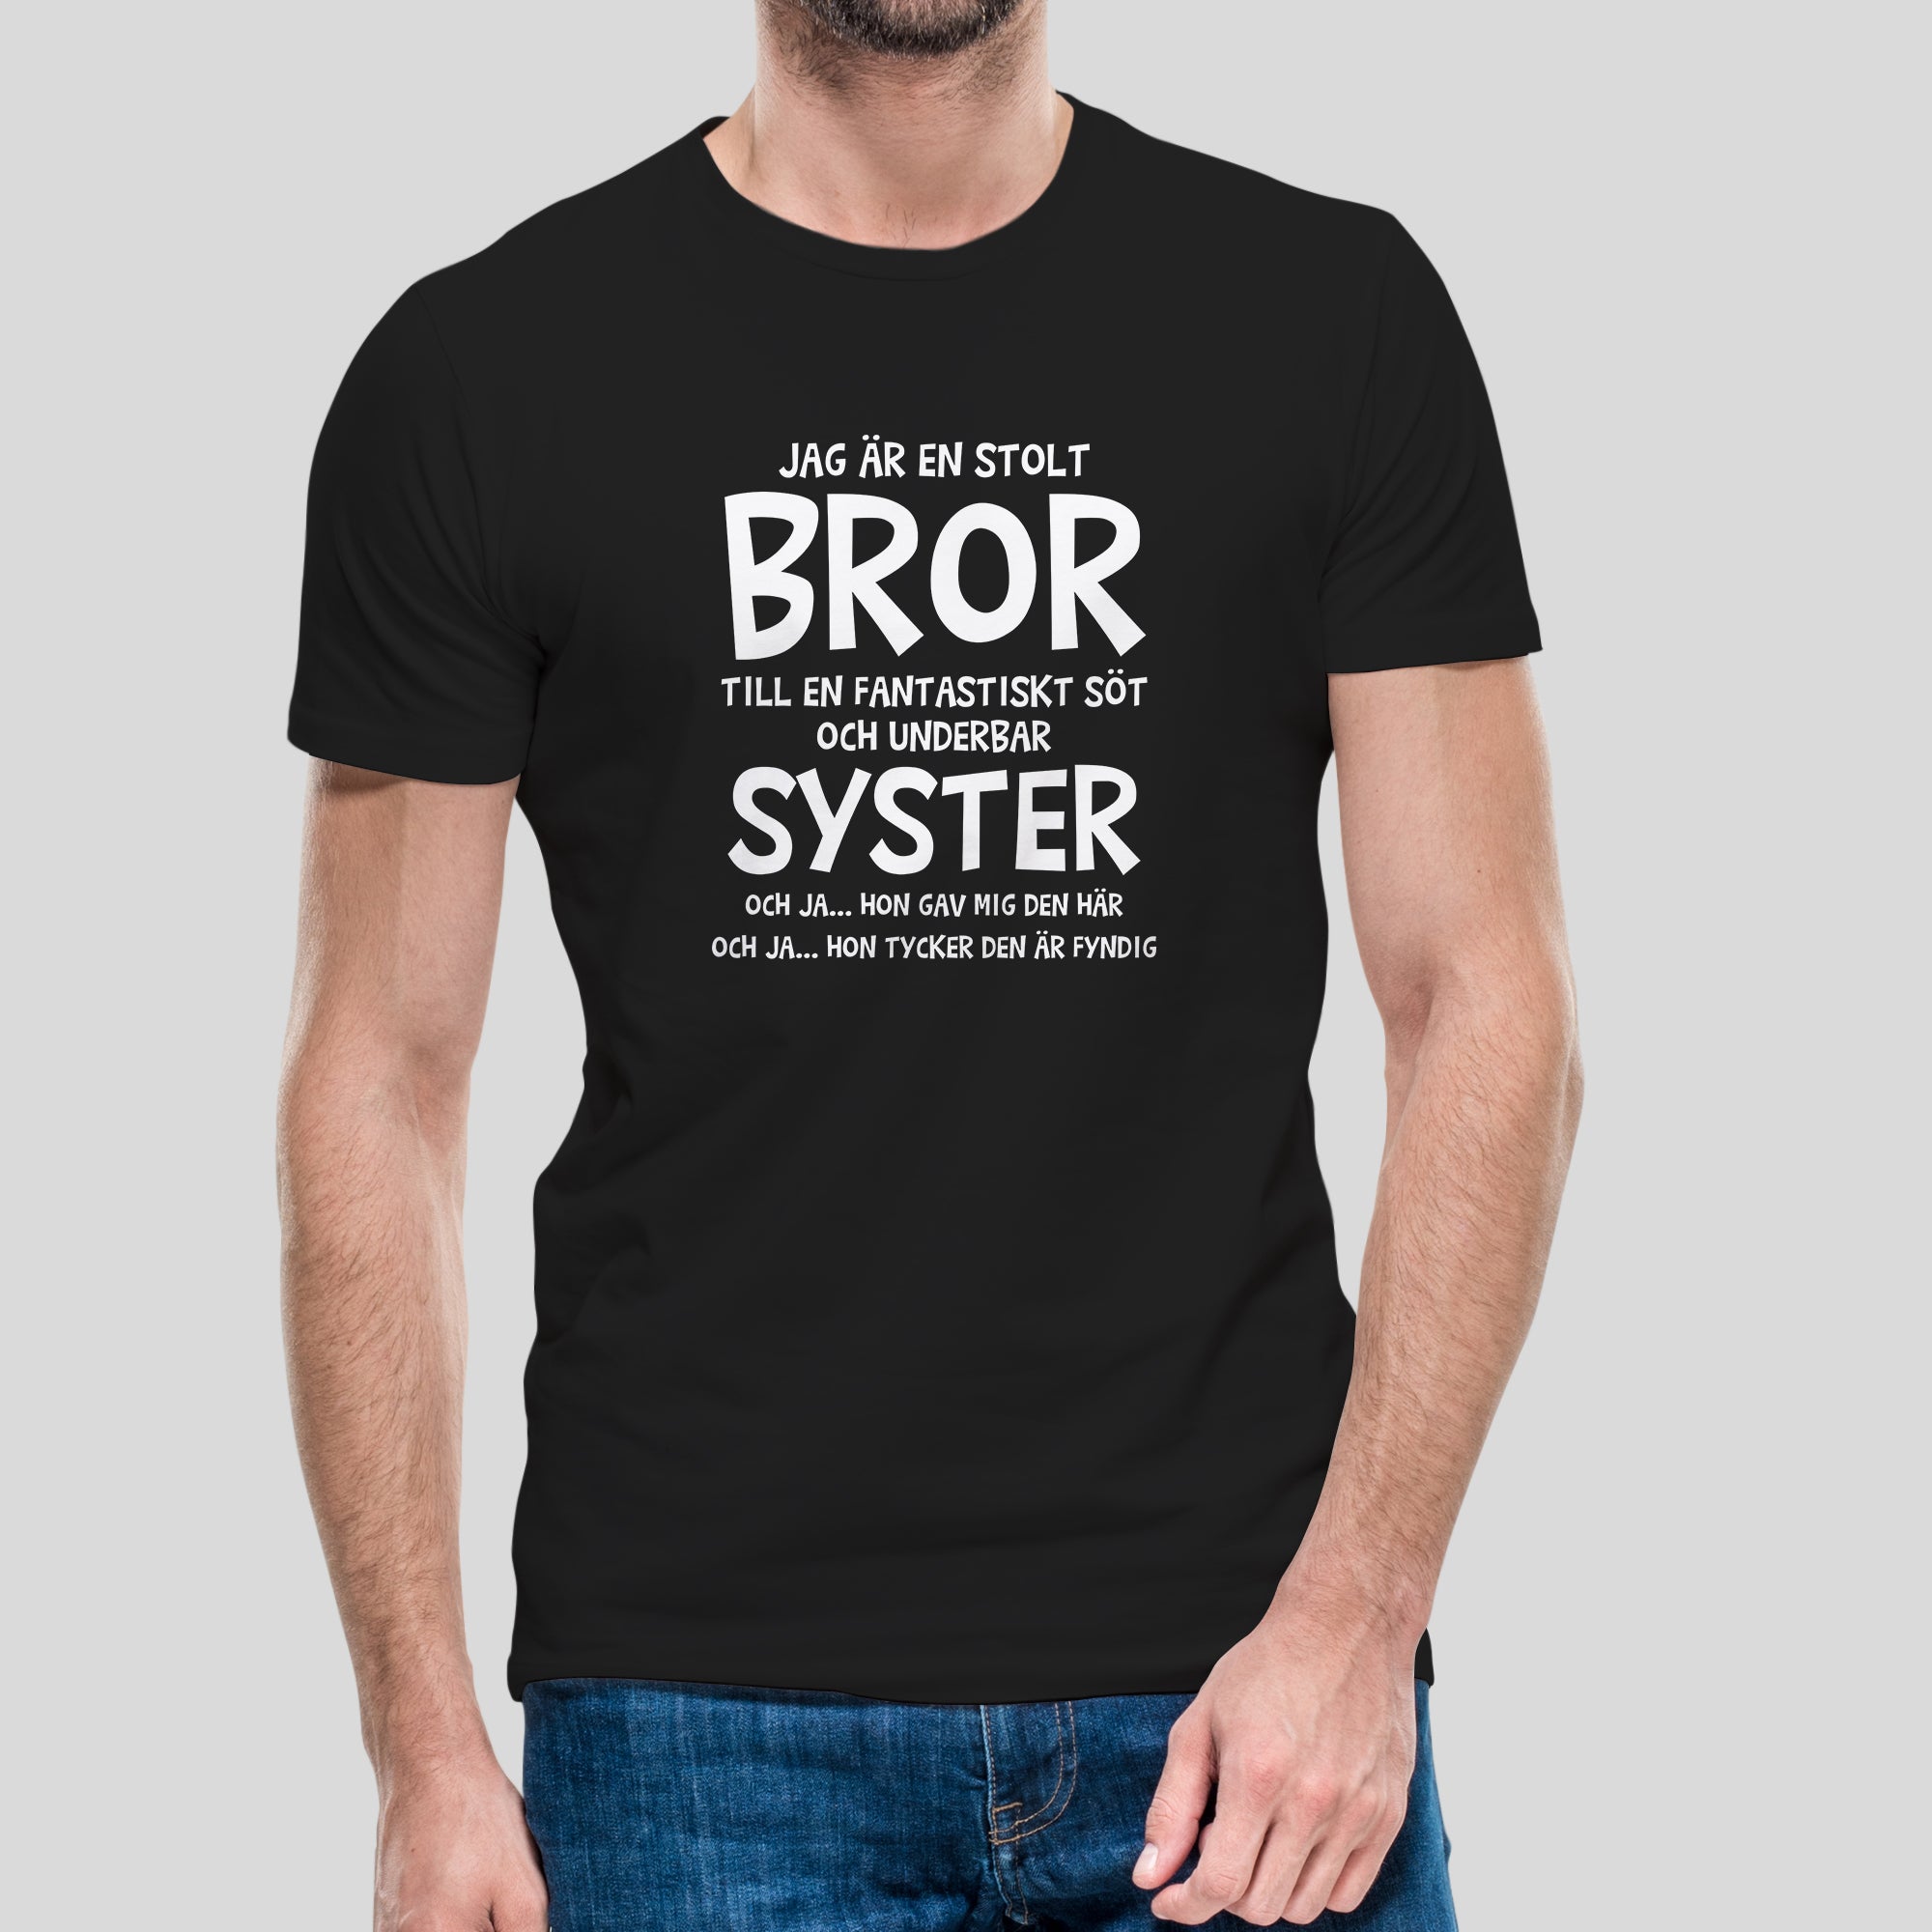 Sløset strukturelt tilstødende T-shirt med texten "Jag är en stolt bror"